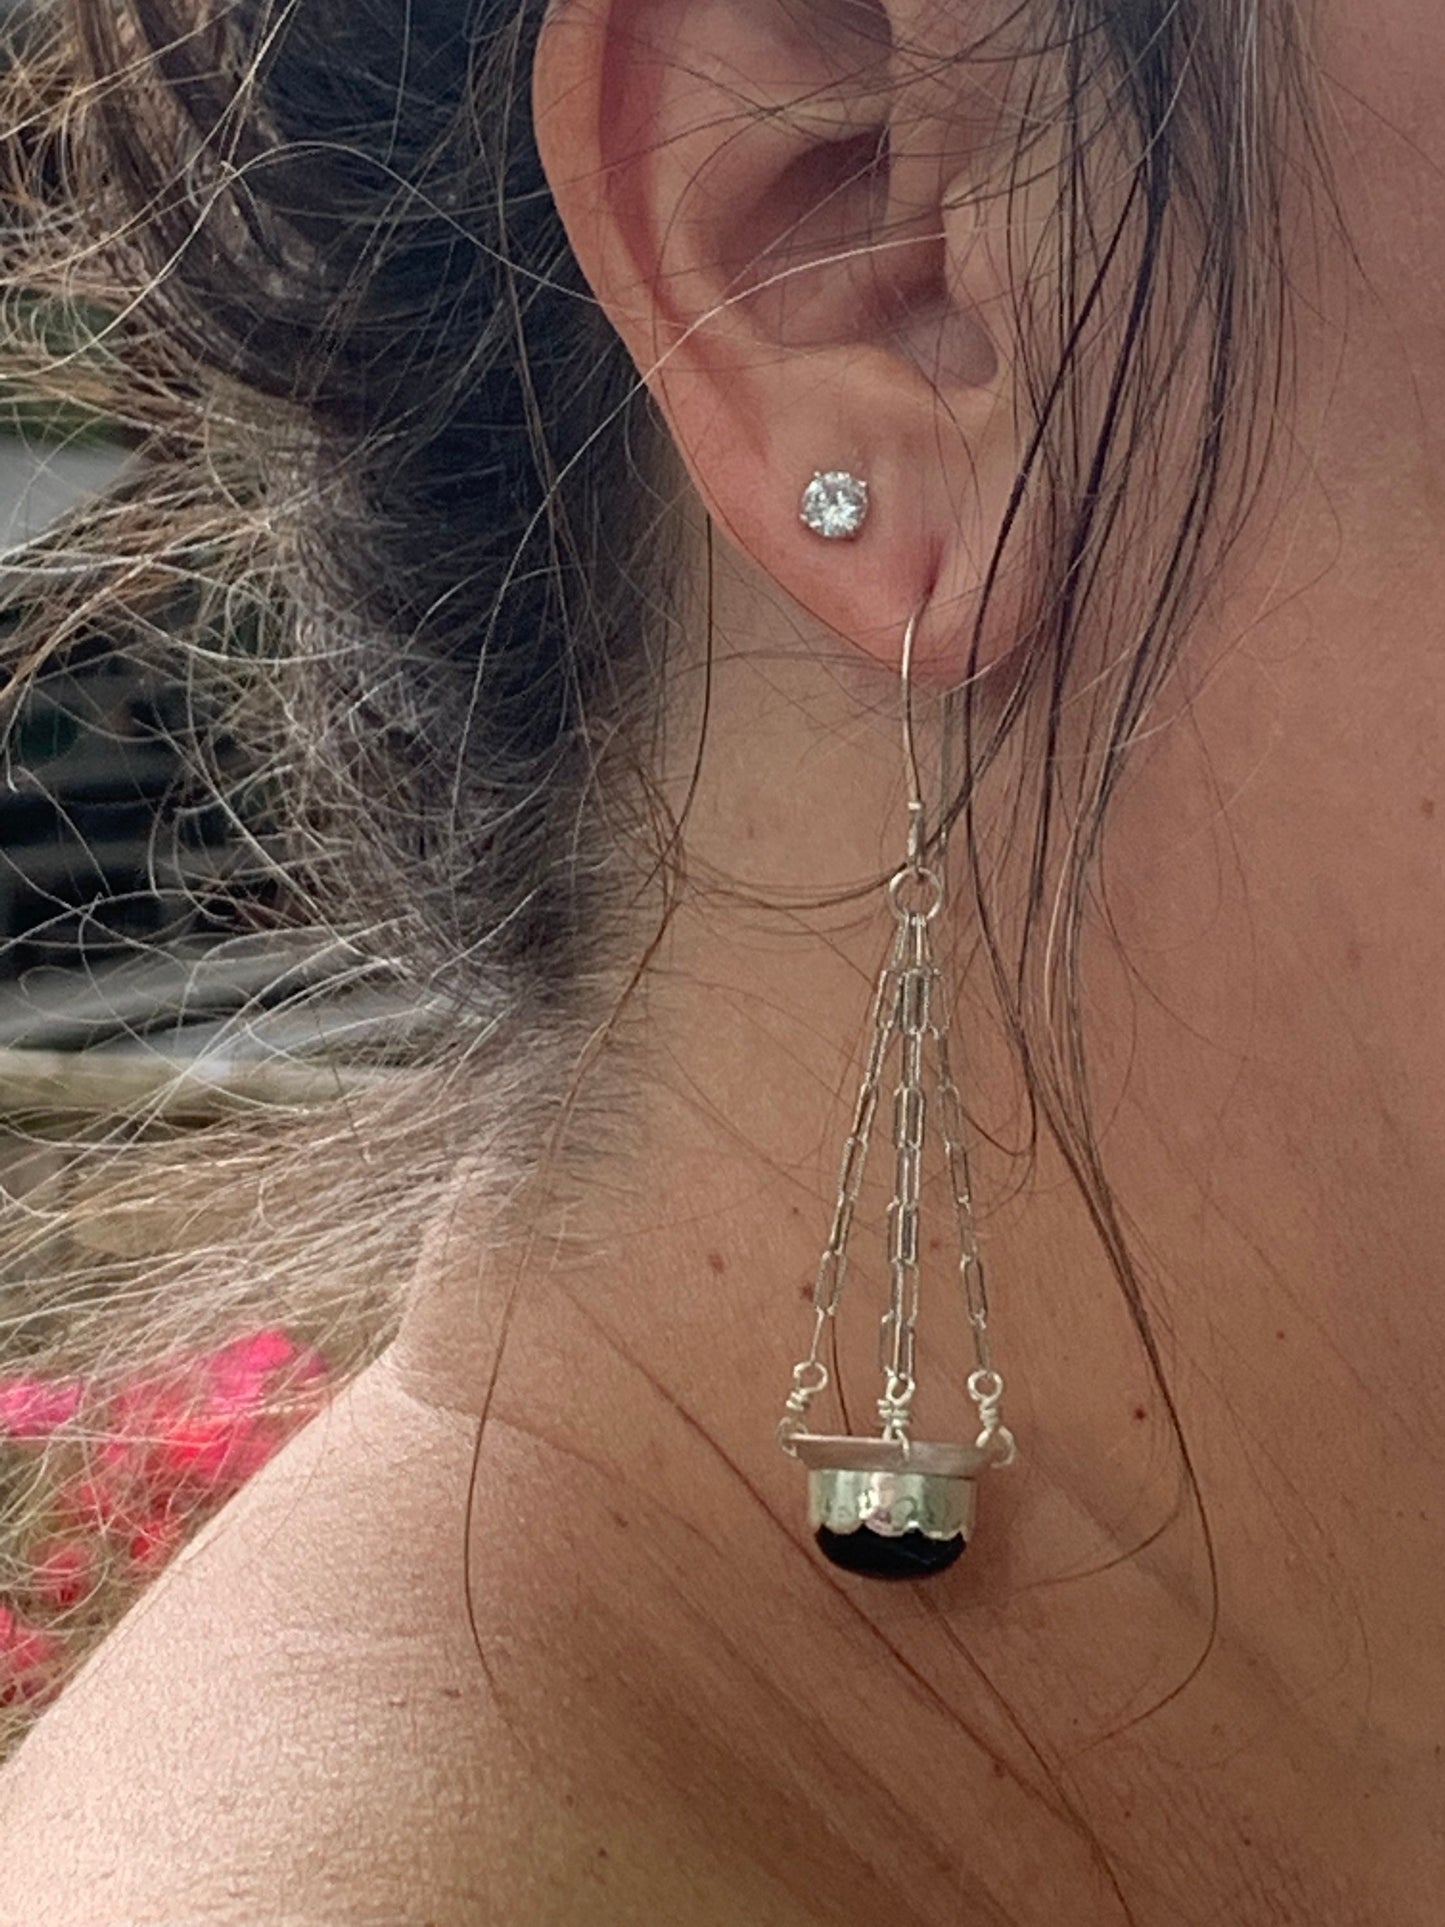 Black onyx and sterling chandelier earrings - unique boho design- heirloom jewelry - handmade gemstone earrings for women - fun earrings